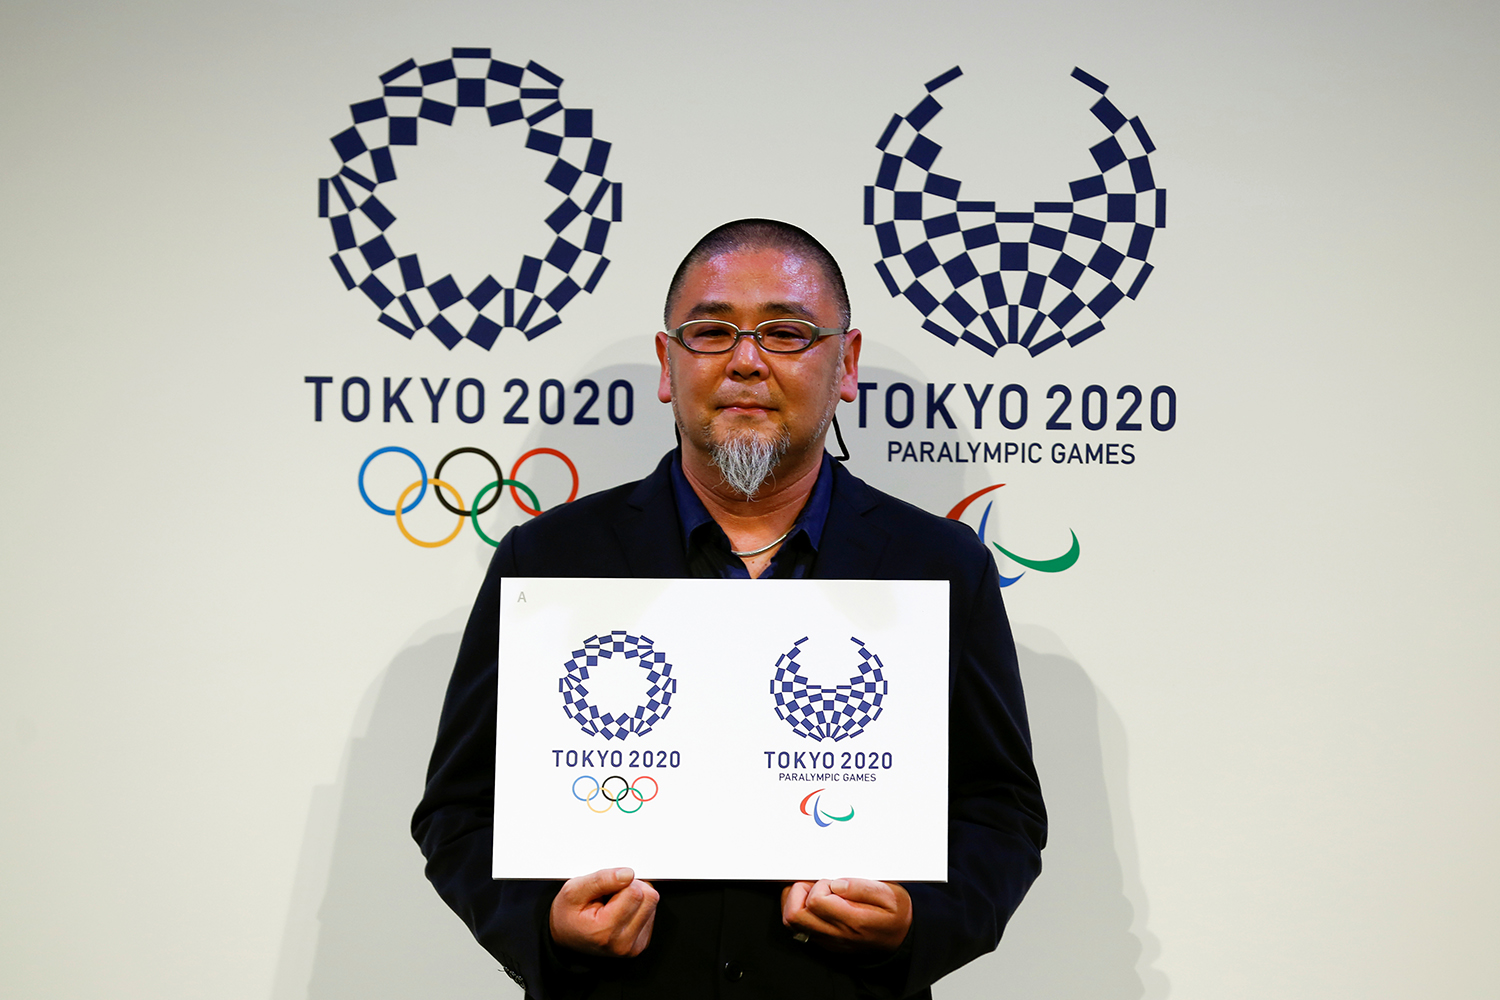 Nuevo logo para Tokio 2020 tras el escándalo de plagio